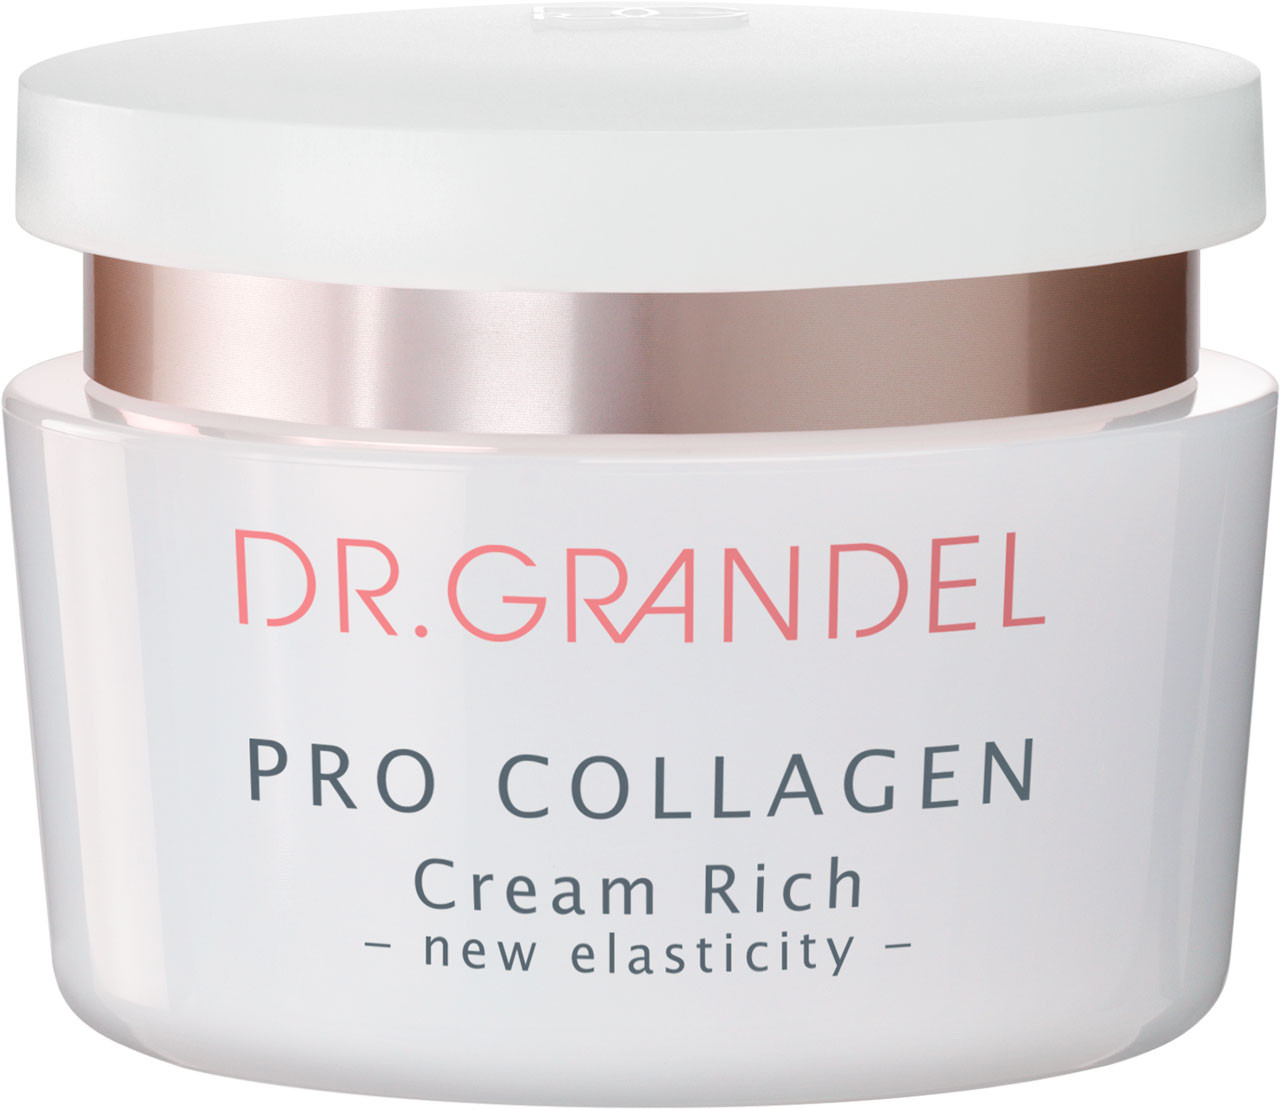 DR. GRANDEL Pro Collagen Cream Rich, 50ml, Retail